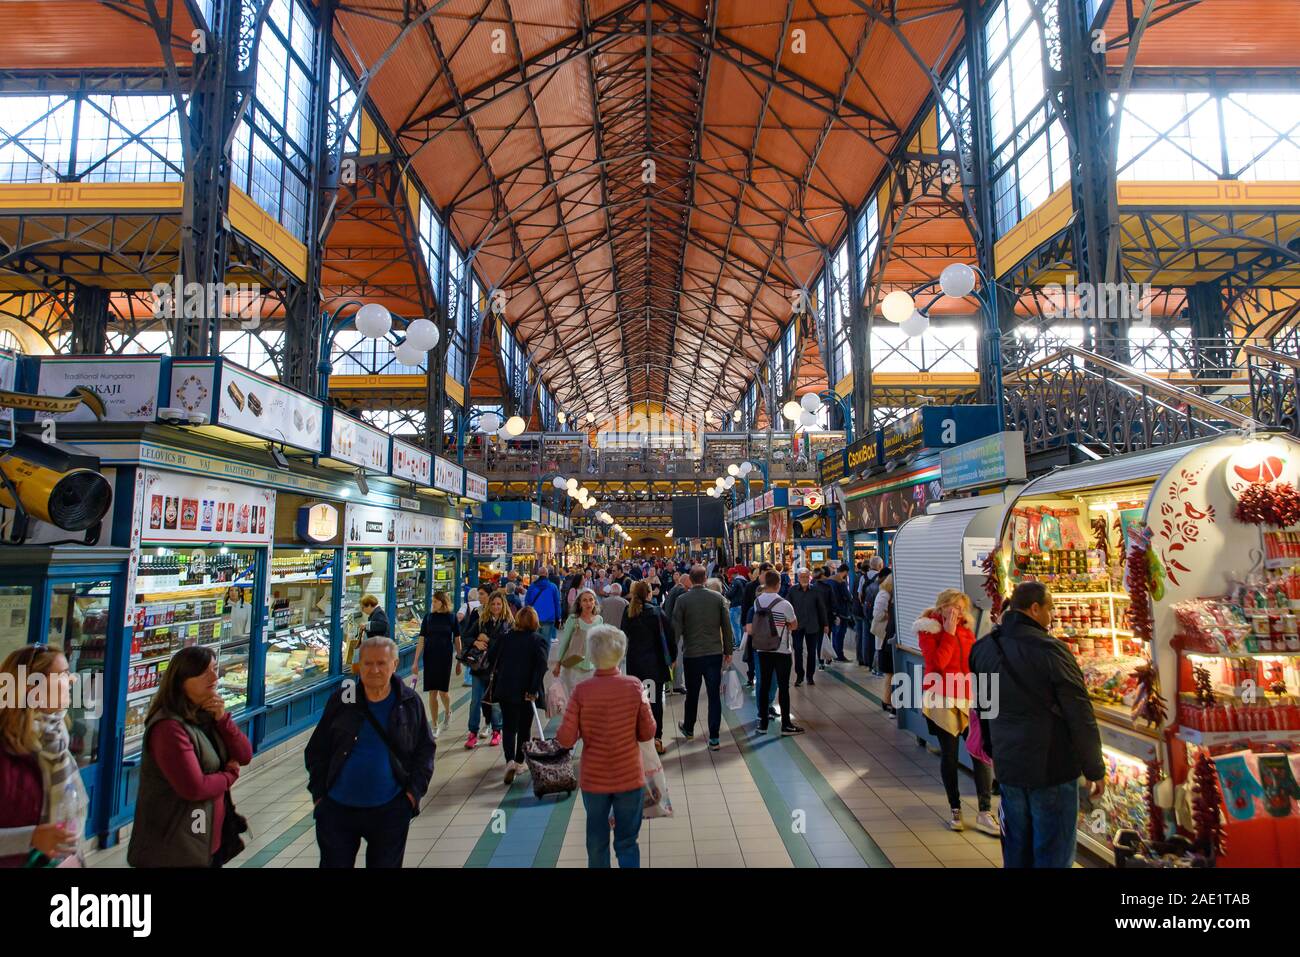 Les gens shopping au Marché Central Hall, le plus grand et le plus ancien marché couvert de Budapest, Hongrie Banque D'Images